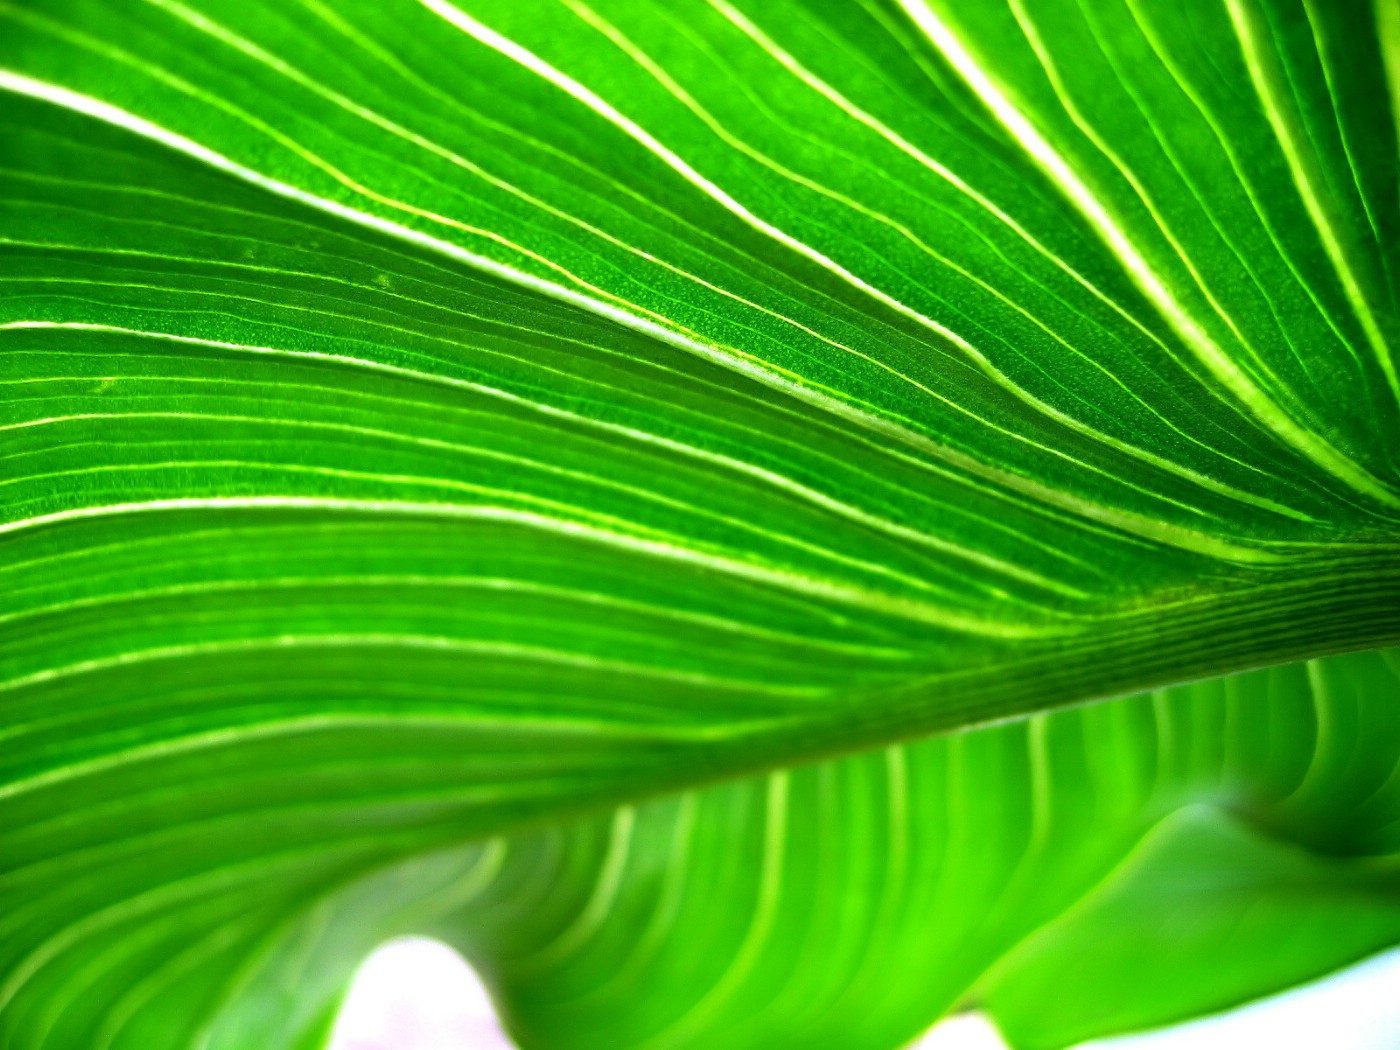 壁纸1400x1050高清晰绿色植物系列 壁纸18壁纸 高清晰绿色植物系列壁纸 高清晰绿色植物系列图片 高清晰绿色植物系列素材 动物壁纸 动物图库 动物图片素材桌面壁纸